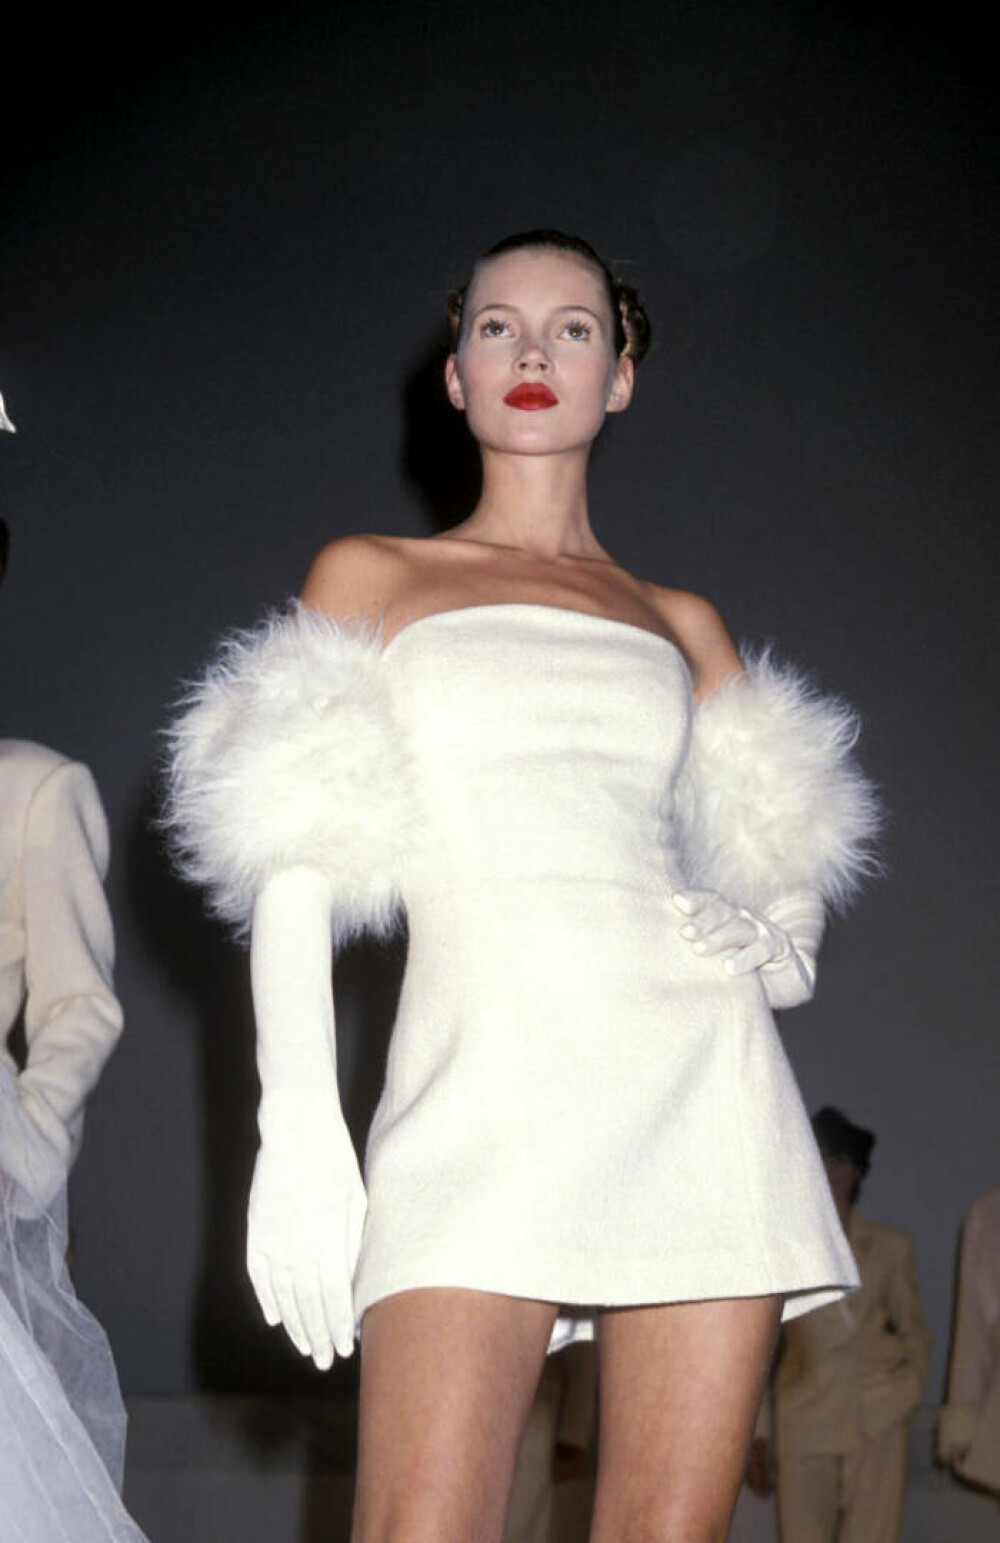 Modelul Kate Moss sărbătorește jumătate de secol. Ce apariții iconice a avut în 50 de ani | FOTO - Imaginea 19